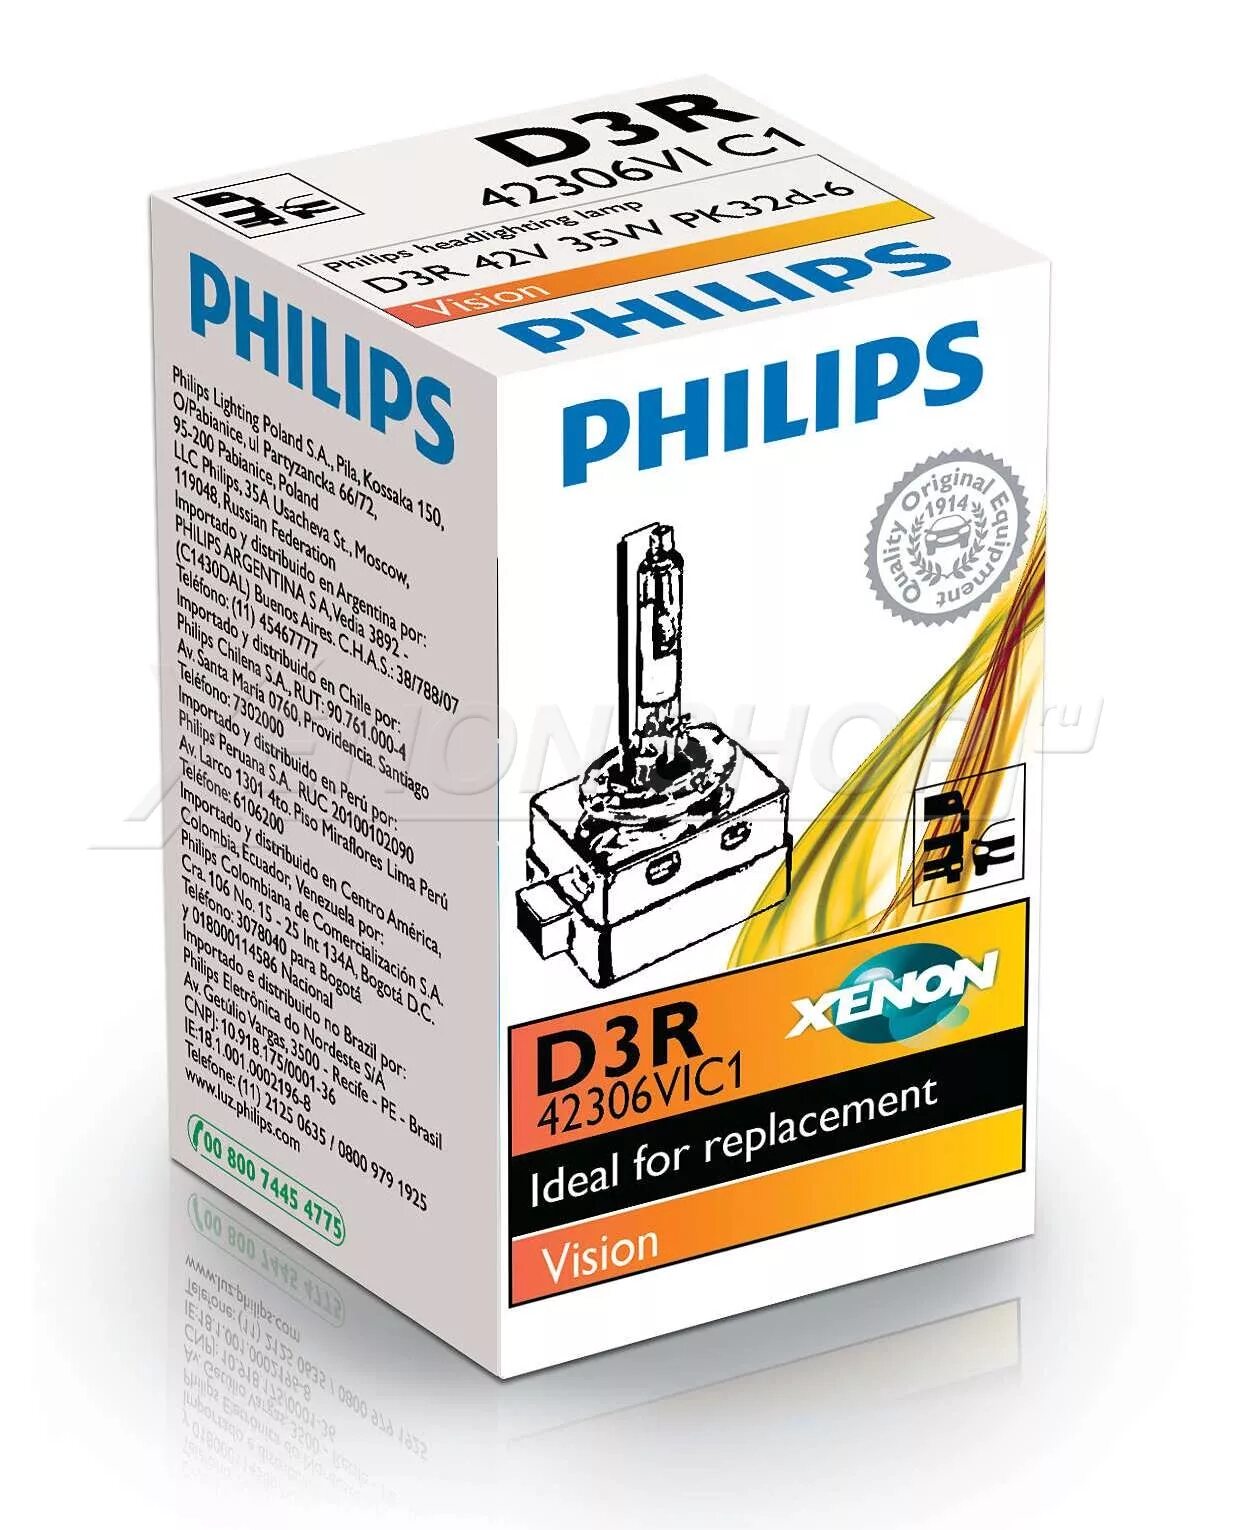 Ксеноновая лампа Philips Vision 85415vic1 d1s. 42403vic1 Philips. Philips 85126vic1. Лампа Xenon Vision 85v d1s 35w pk32d-2 (картон) (1 шт.).